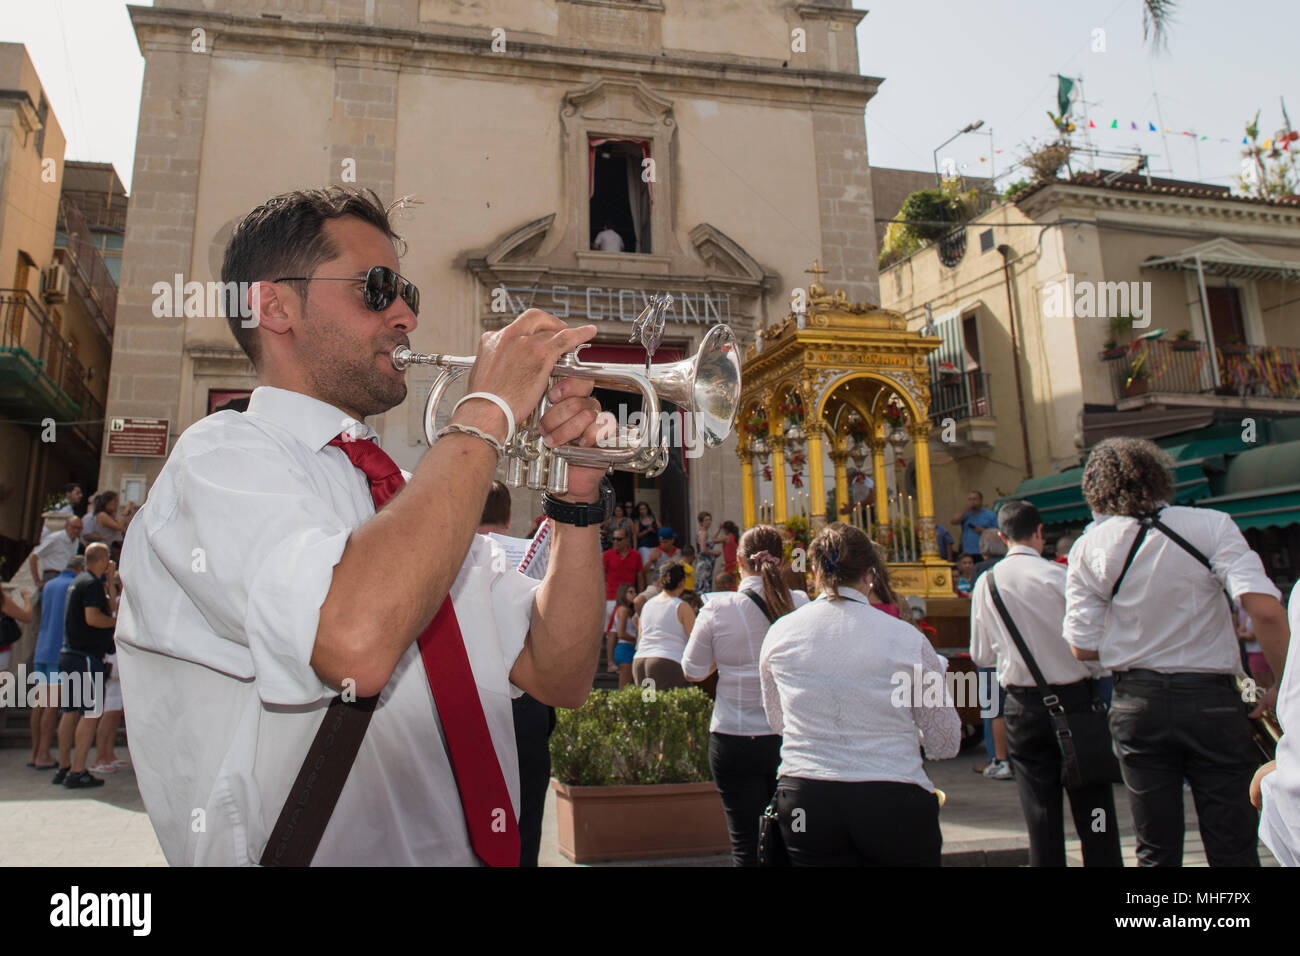 ACI TREZZA, ITALIE - 24 juin, 2014 - San Giovanni défilé traditionnel avec 'pisci a mari' show où ils reproduisent rouge chasse. Le thon est joué par un jeune Banque D'Images